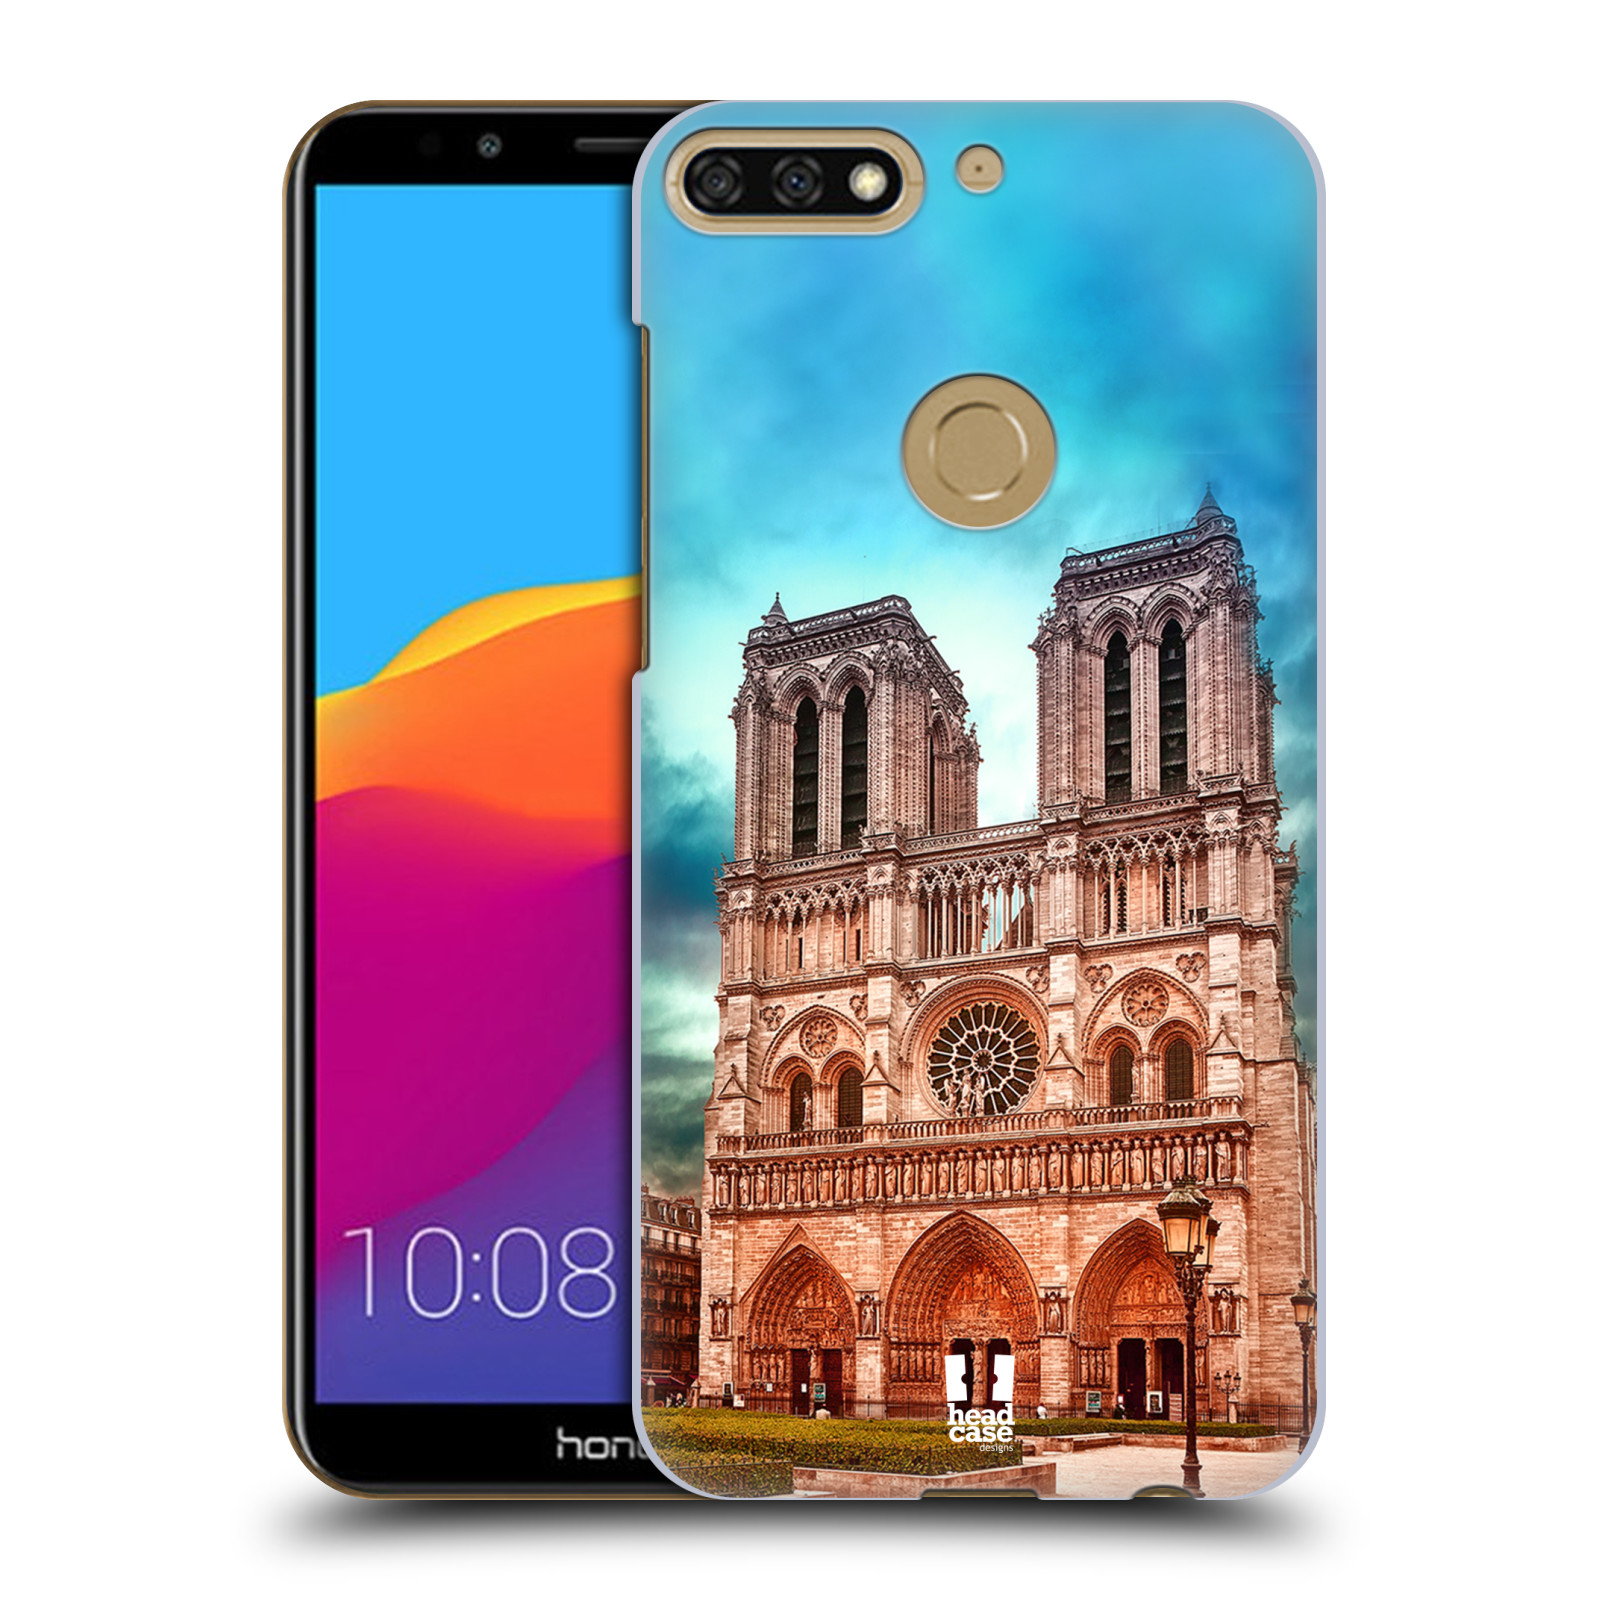 Pouzdro na mobil HONOR 7C - HEAD CASE - historická místa katedrála Notre Dame